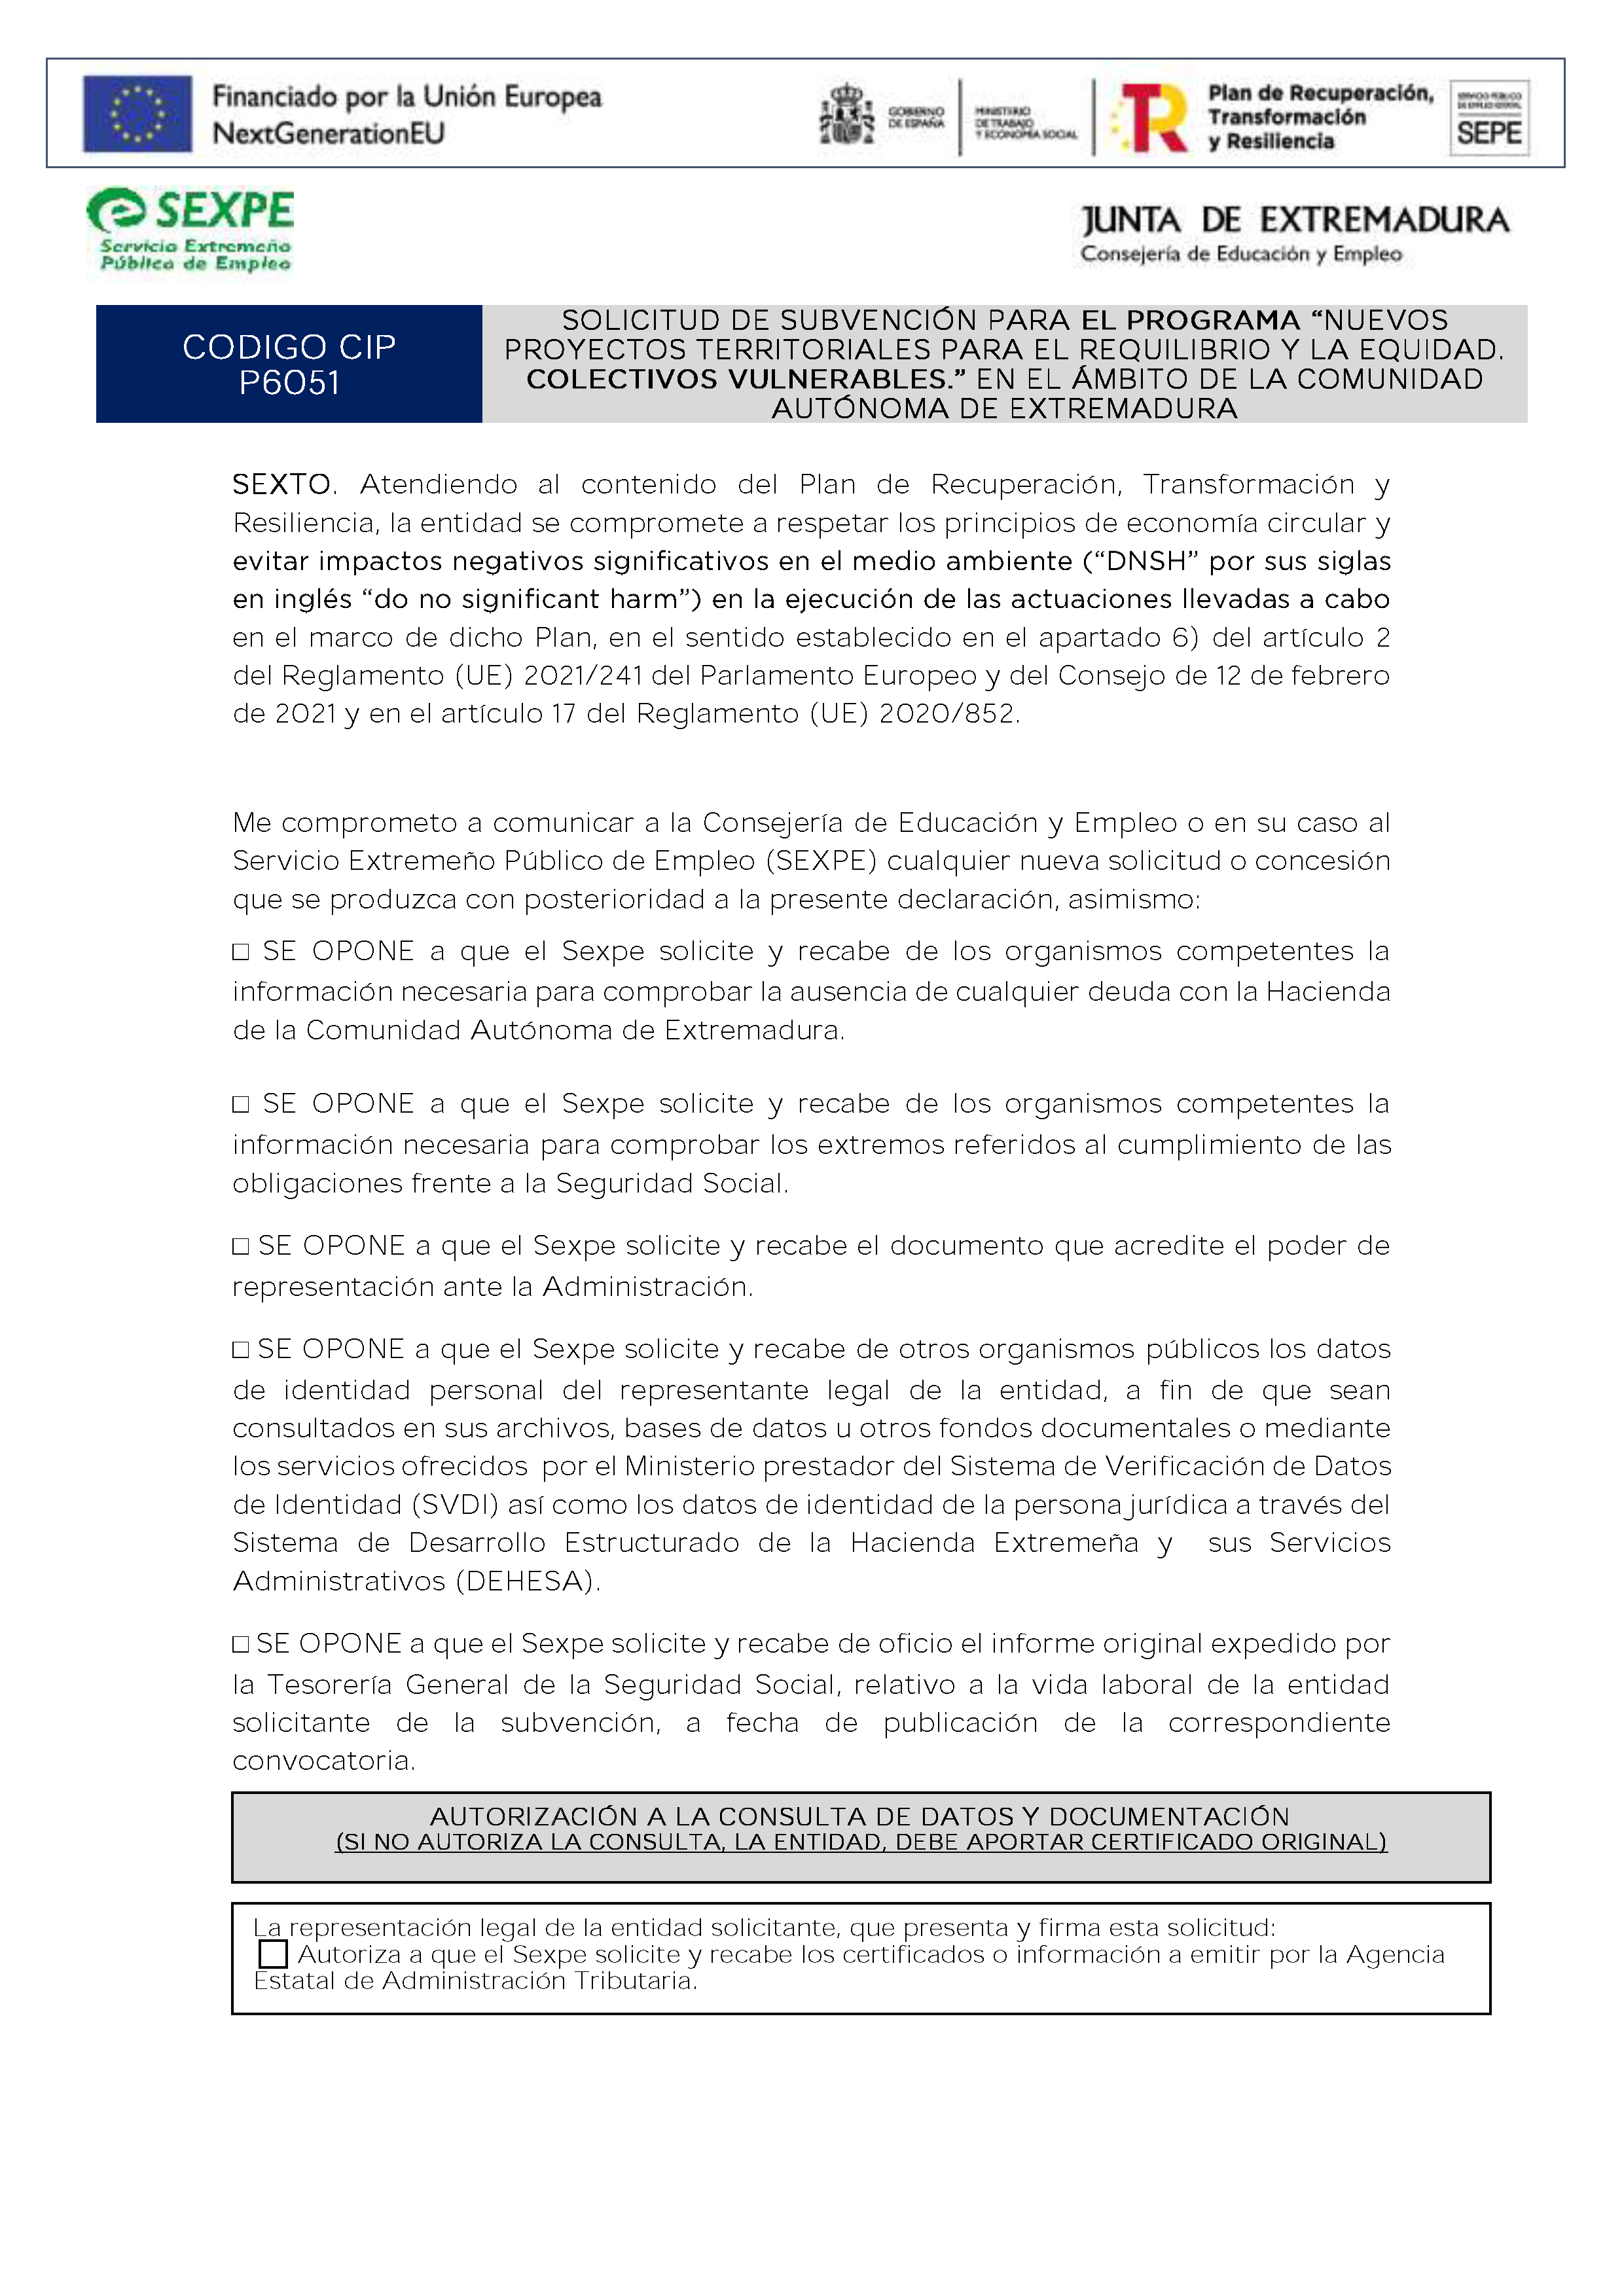 SOLICITUD DE SUBVENCIÓN PARA EL PROGRAMA NUEVOS PROYECTOS TERRITORIALES PARA EL REQUILIBRIO Y LA EQUIDAD. COLECTIVOS VULNERABLES. EN EL ÁMBITO DE LA COMUNIDAD AUTÓNOMA DE EXTREMADURA Pag 3